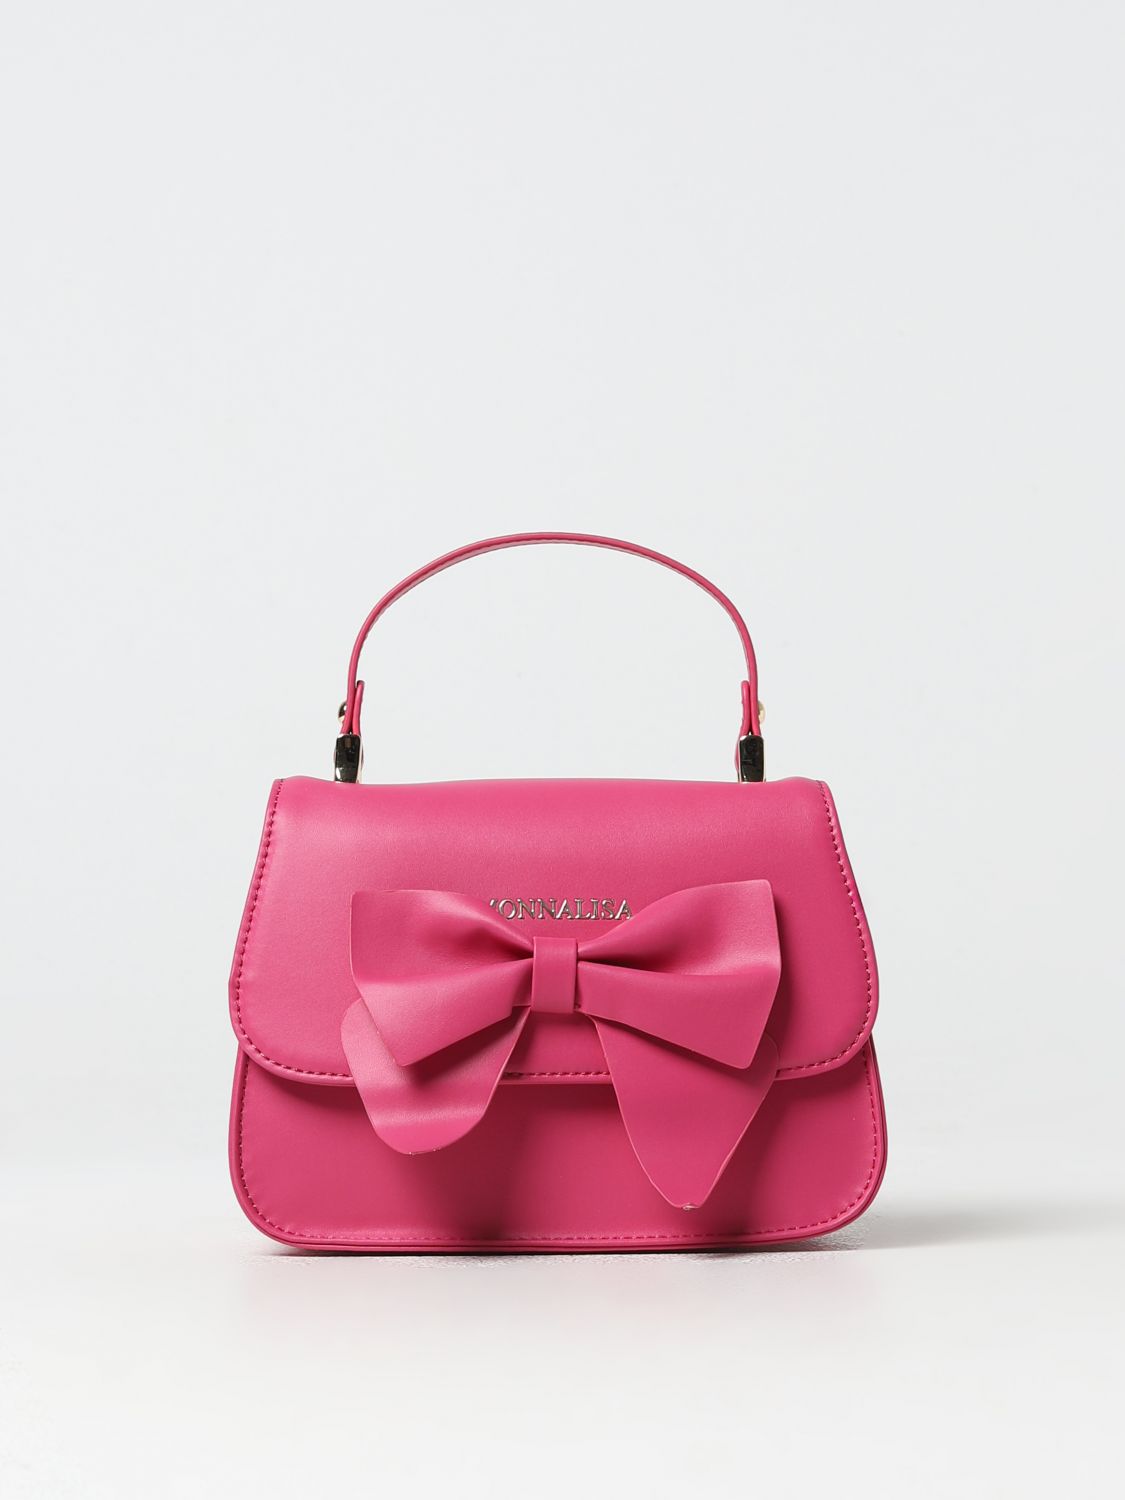 MONNALISA bag Pink for girls